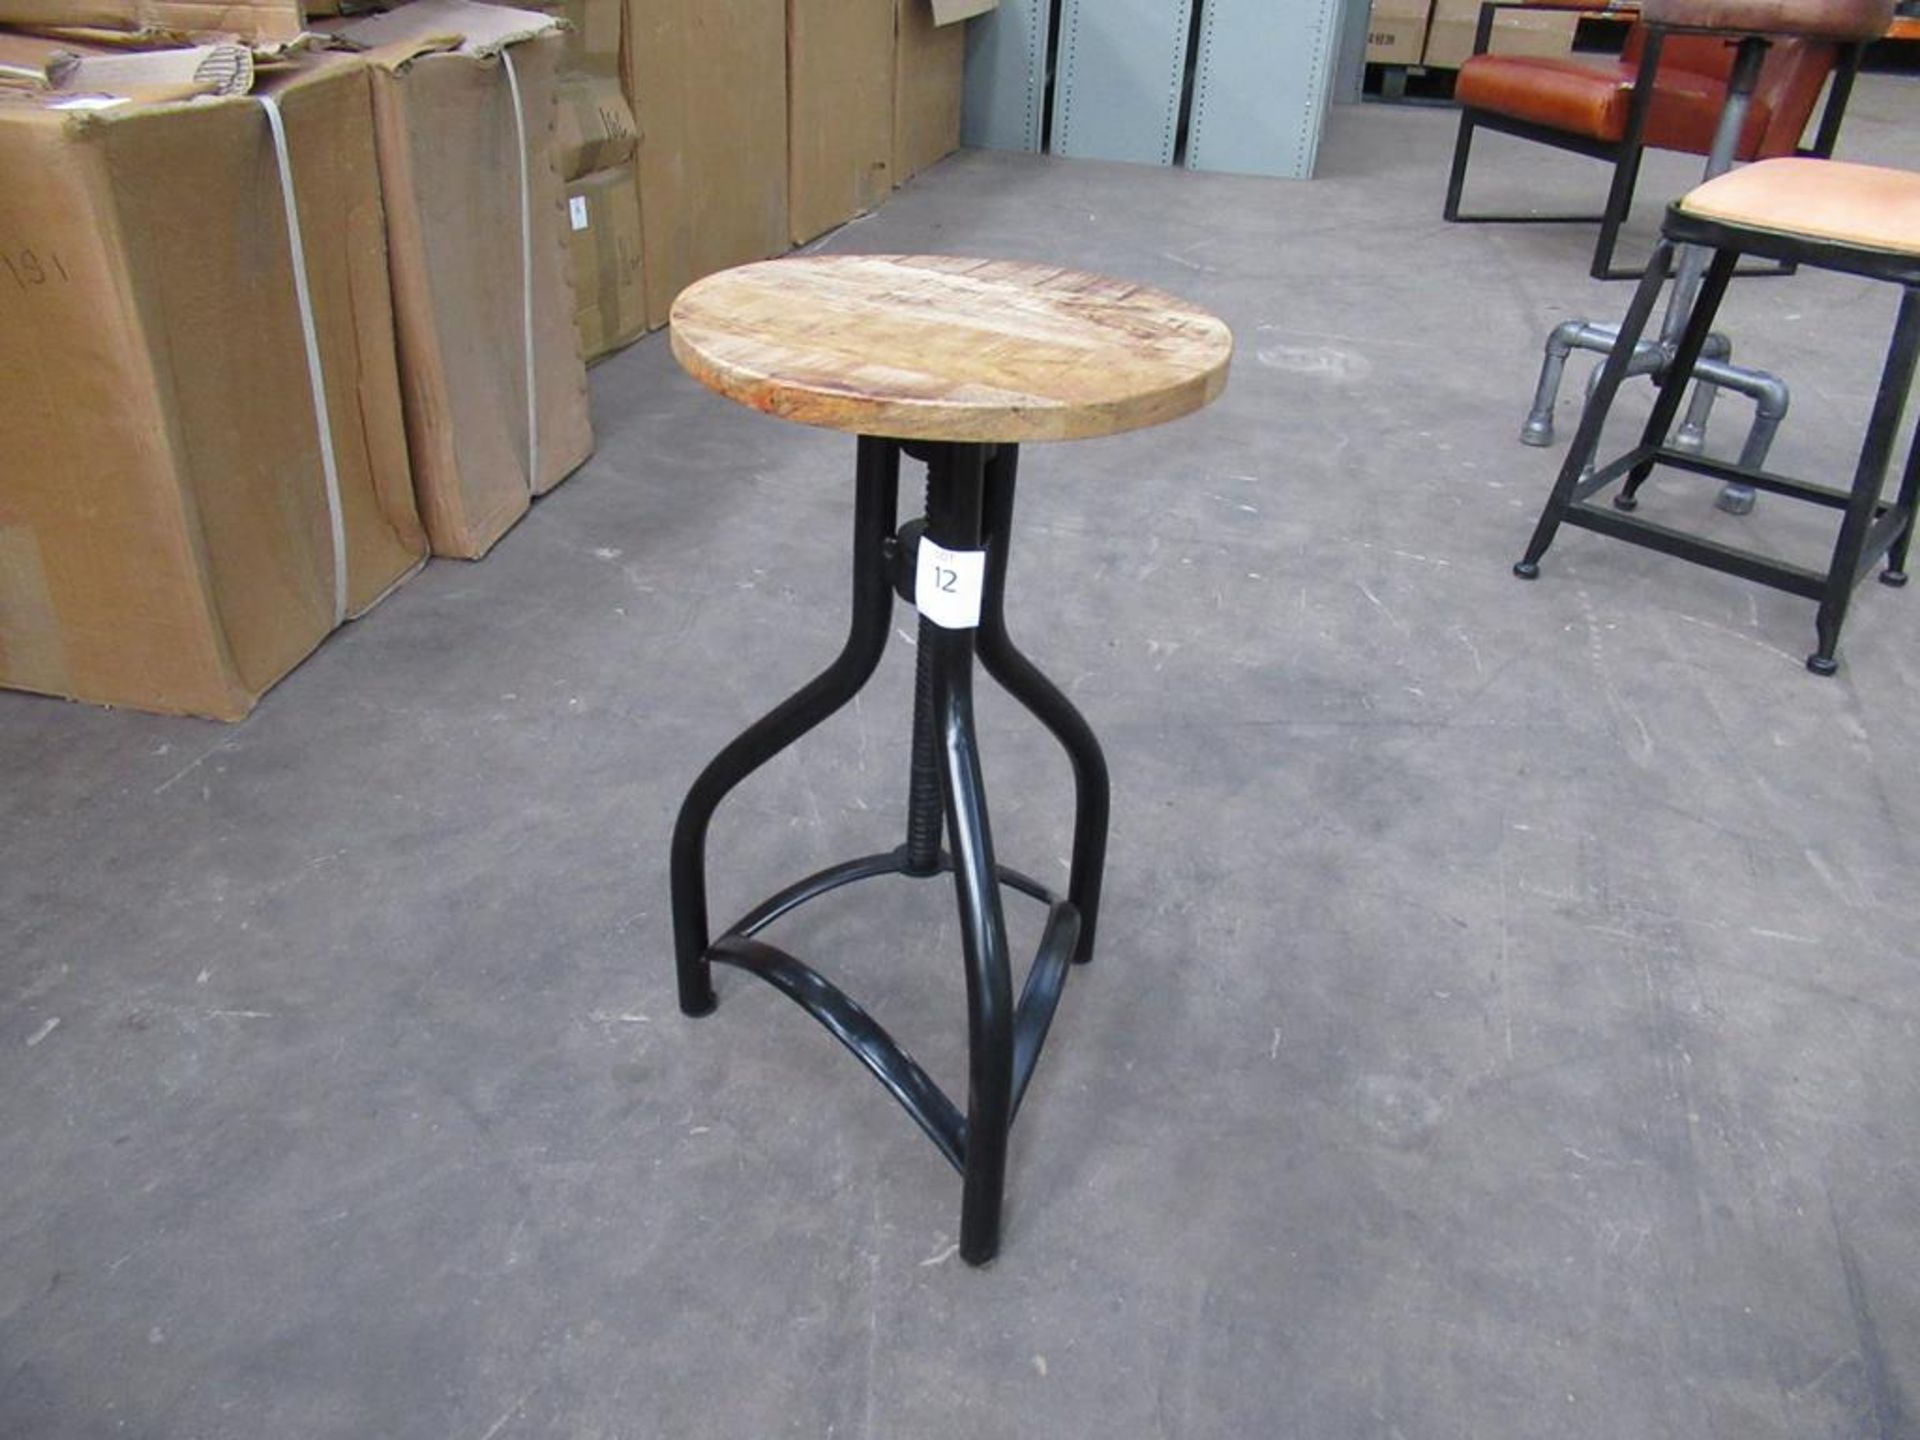 2 x Wooden top adjustable low stool